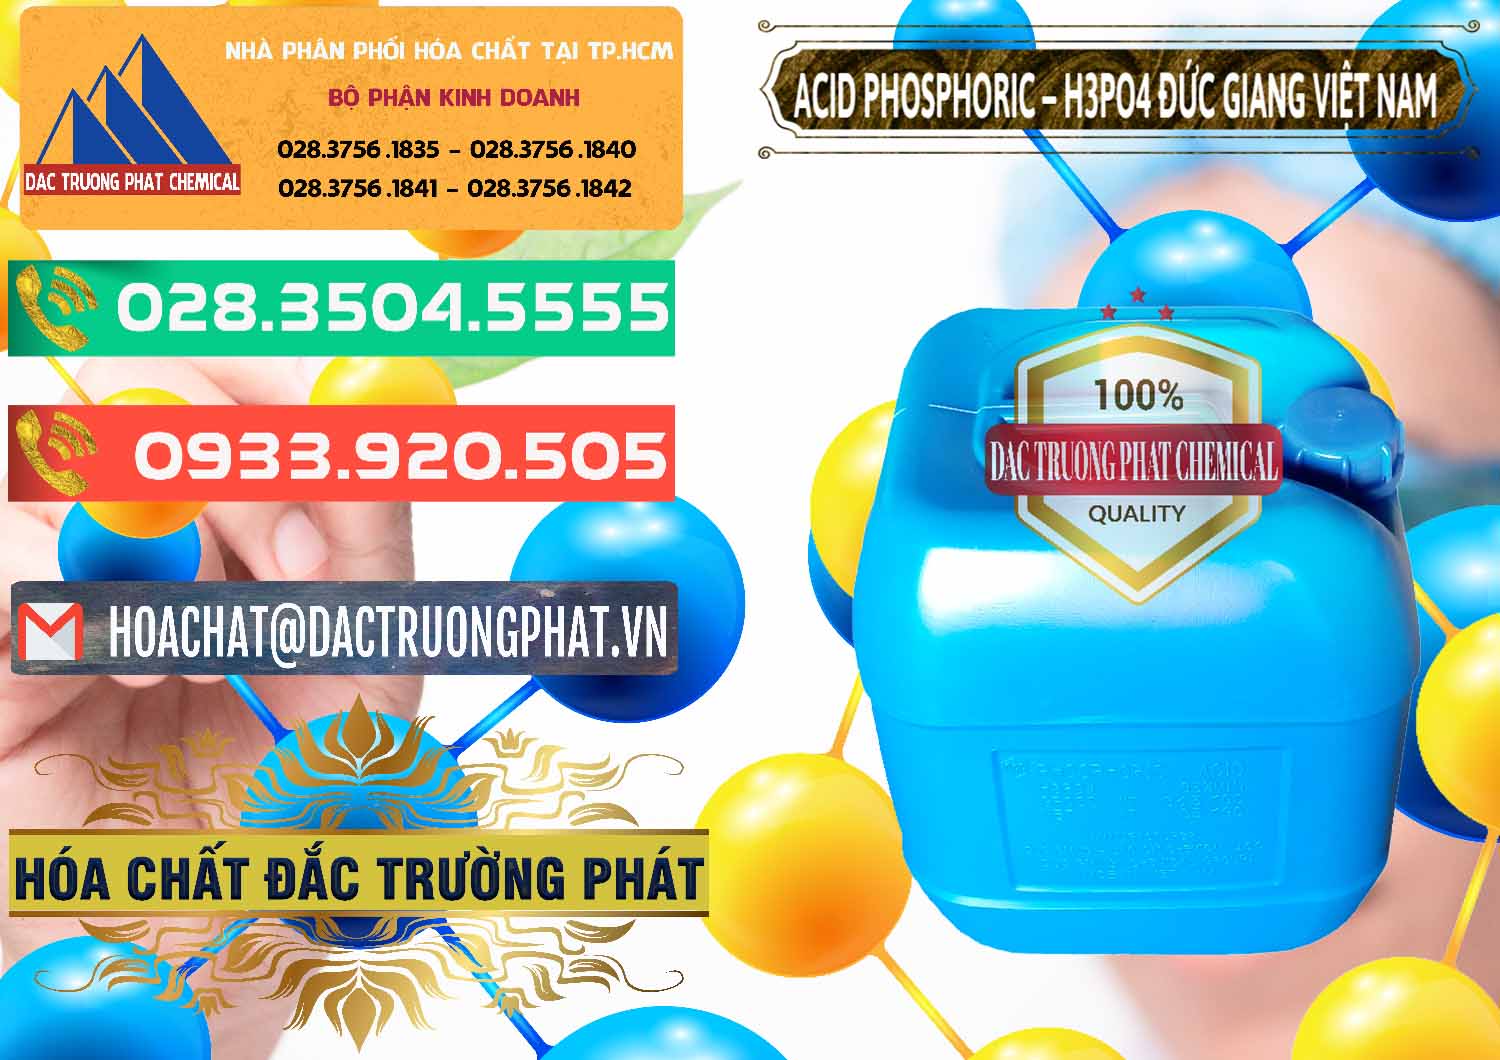 Nơi chuyên cung cấp _ bán Axit Phosphoric - Acid Phosphoric H3PO4 85% Đức Giang Việt Nam - 0184 - Cty chuyên kinh doanh & cung cấp hóa chất tại TP.HCM - congtyhoachat.com.vn